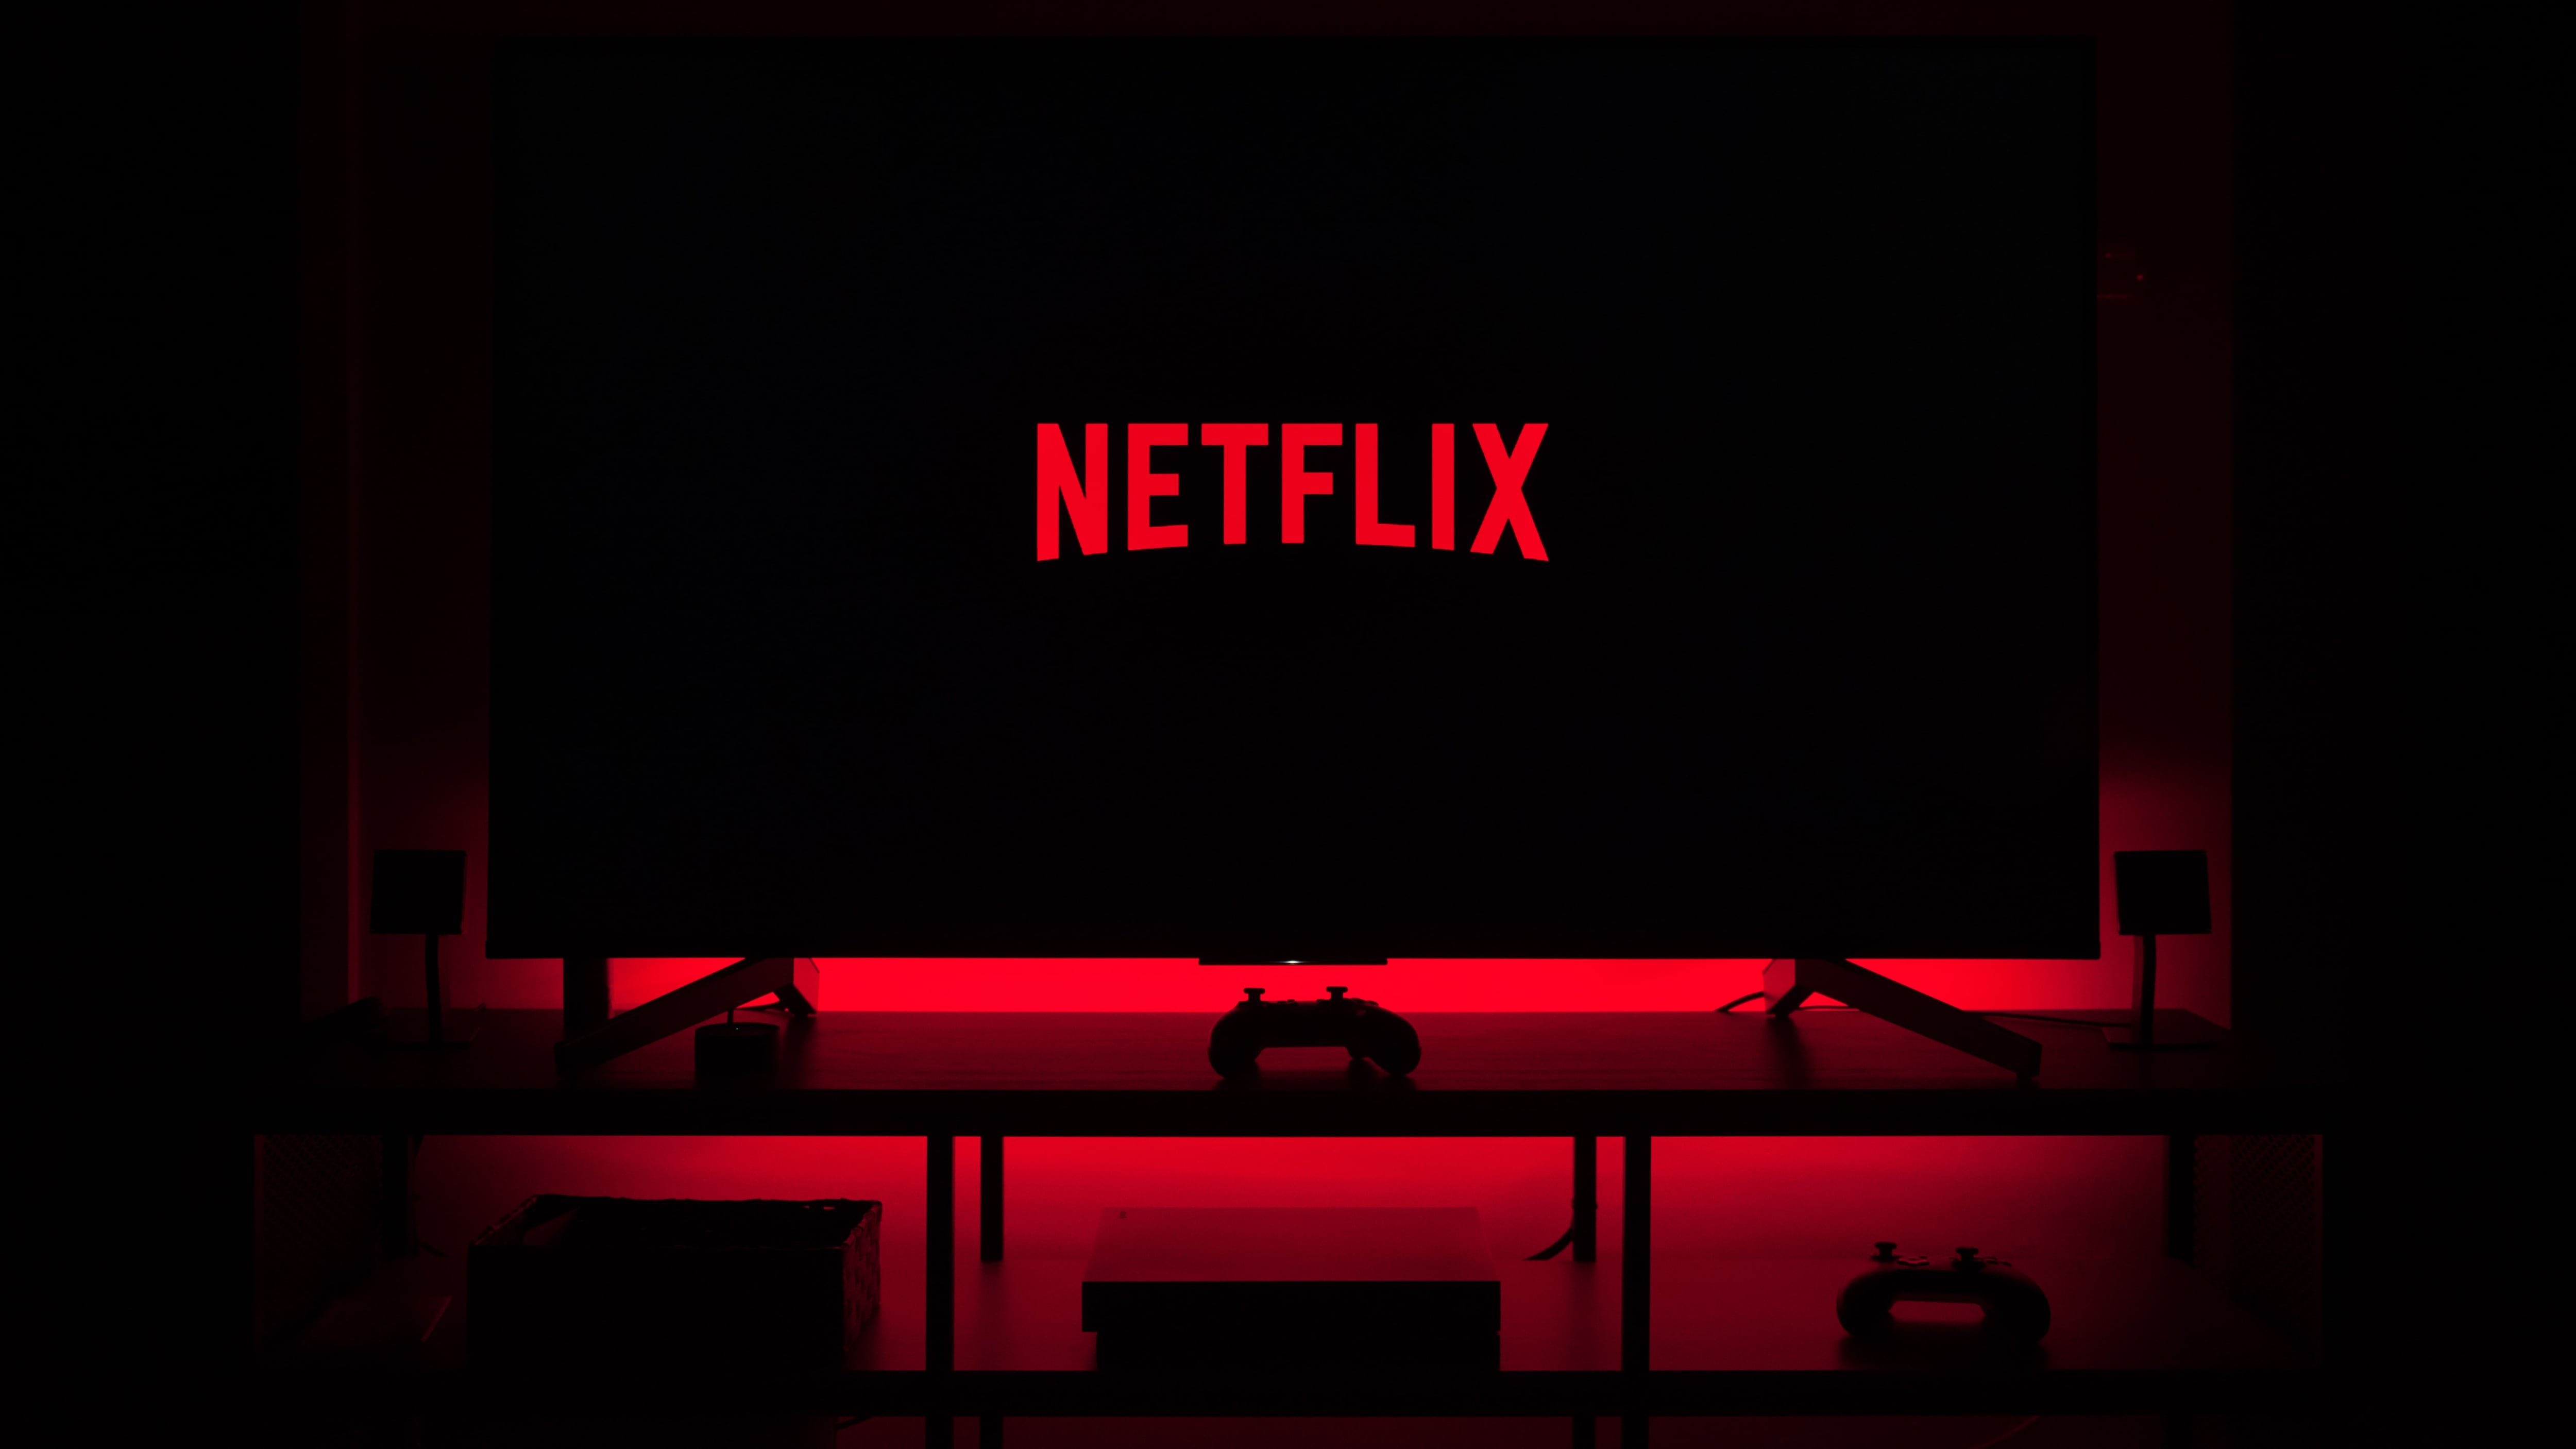 Televisão em sala escura exibindo logo da Netflix